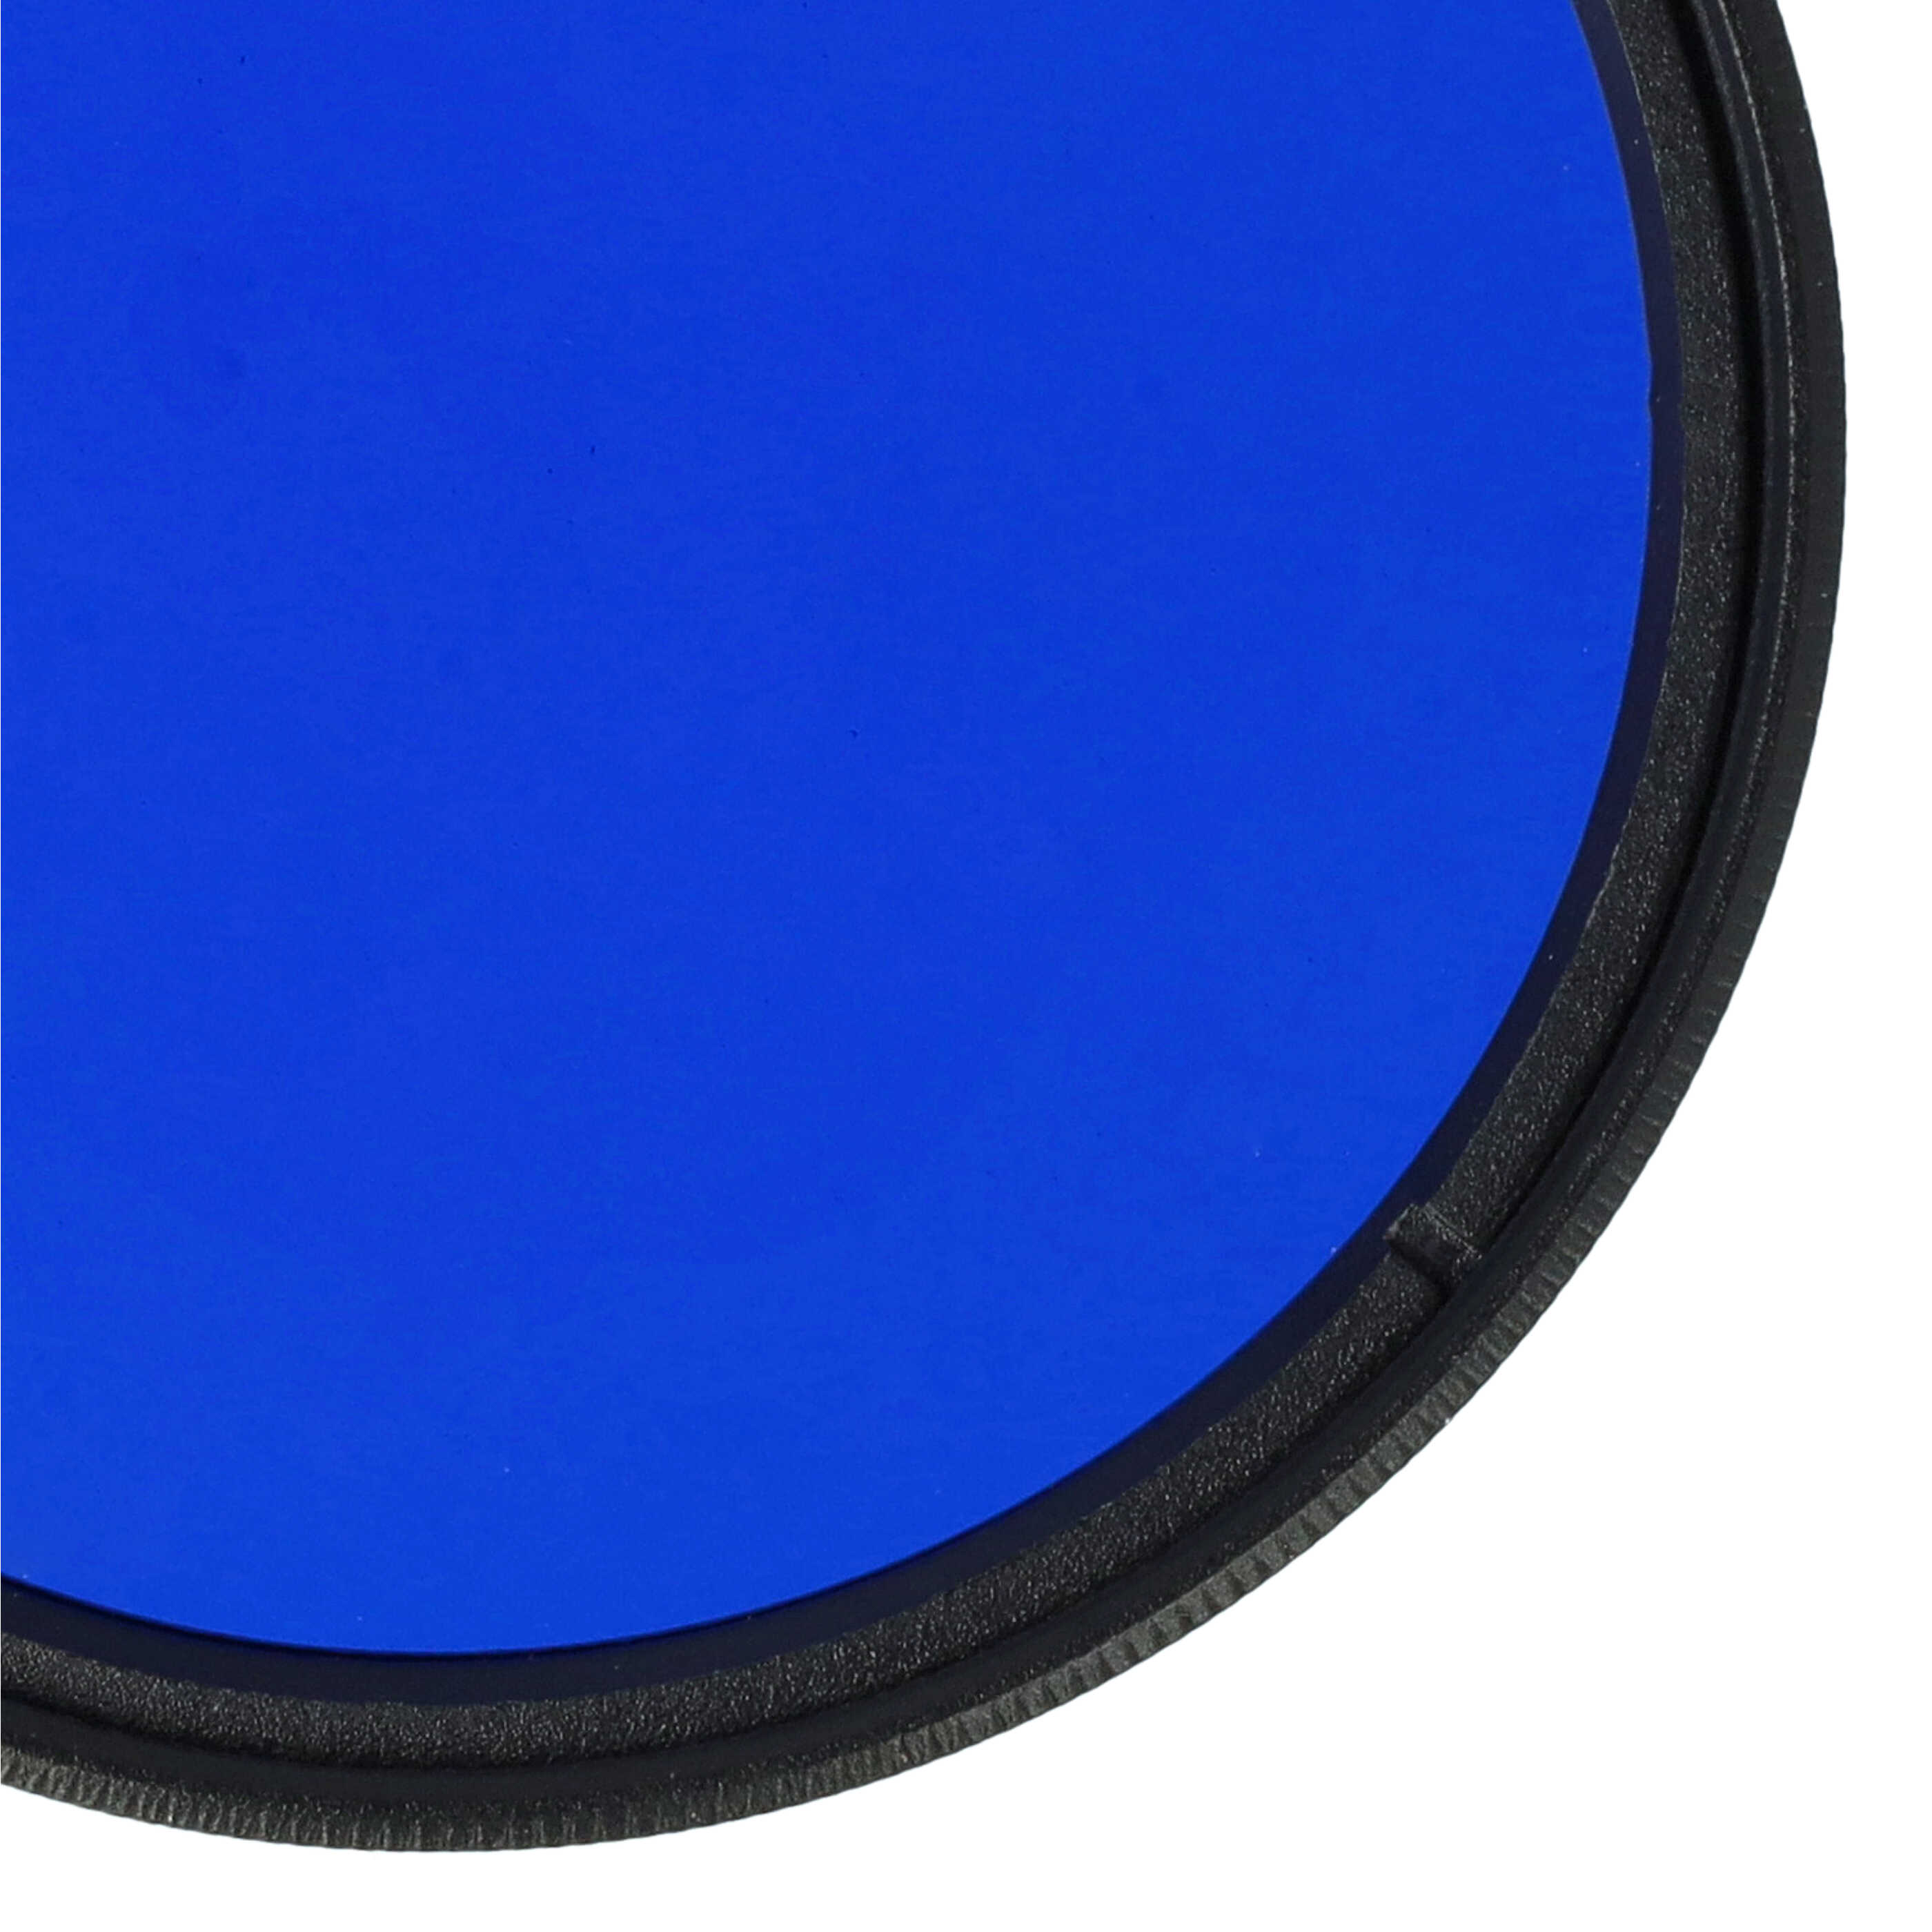 Farbfilter blau passend für Kamera Objektive mit 52 mm Filtergewinde - Blaufilter